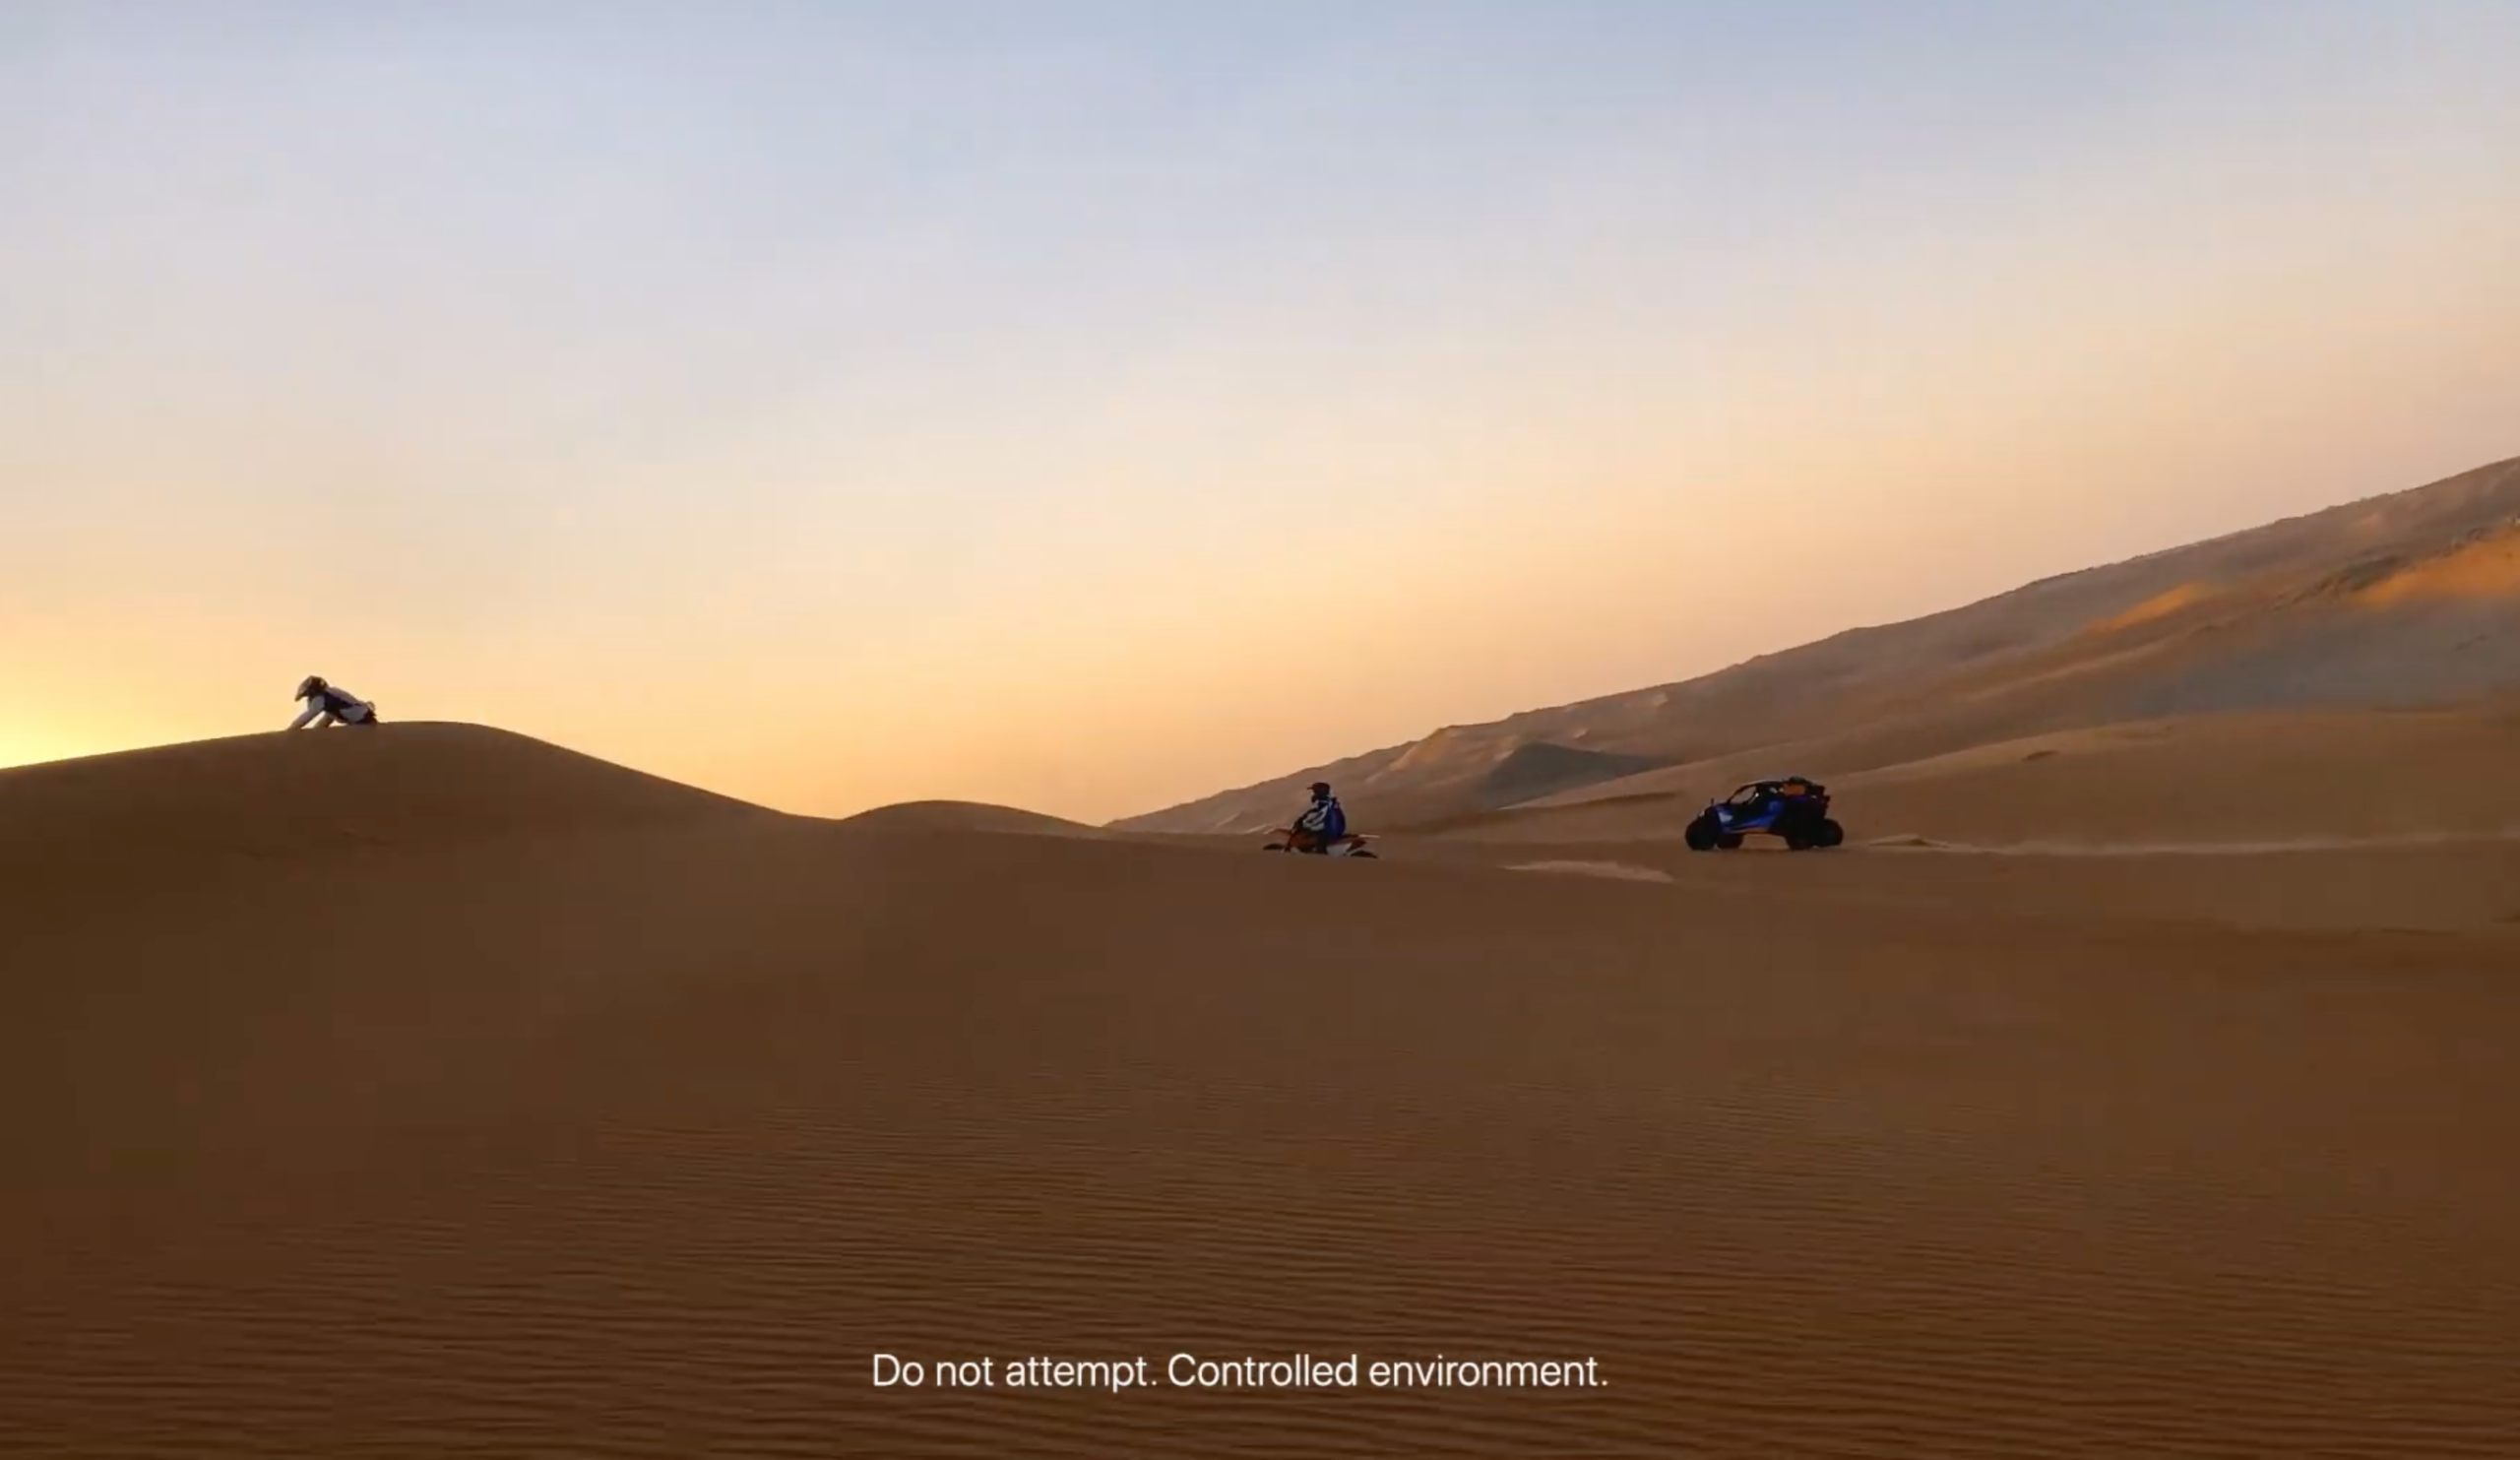 Vídeo da série "Filmado com iPhone" no deserto da Arábia Saudita